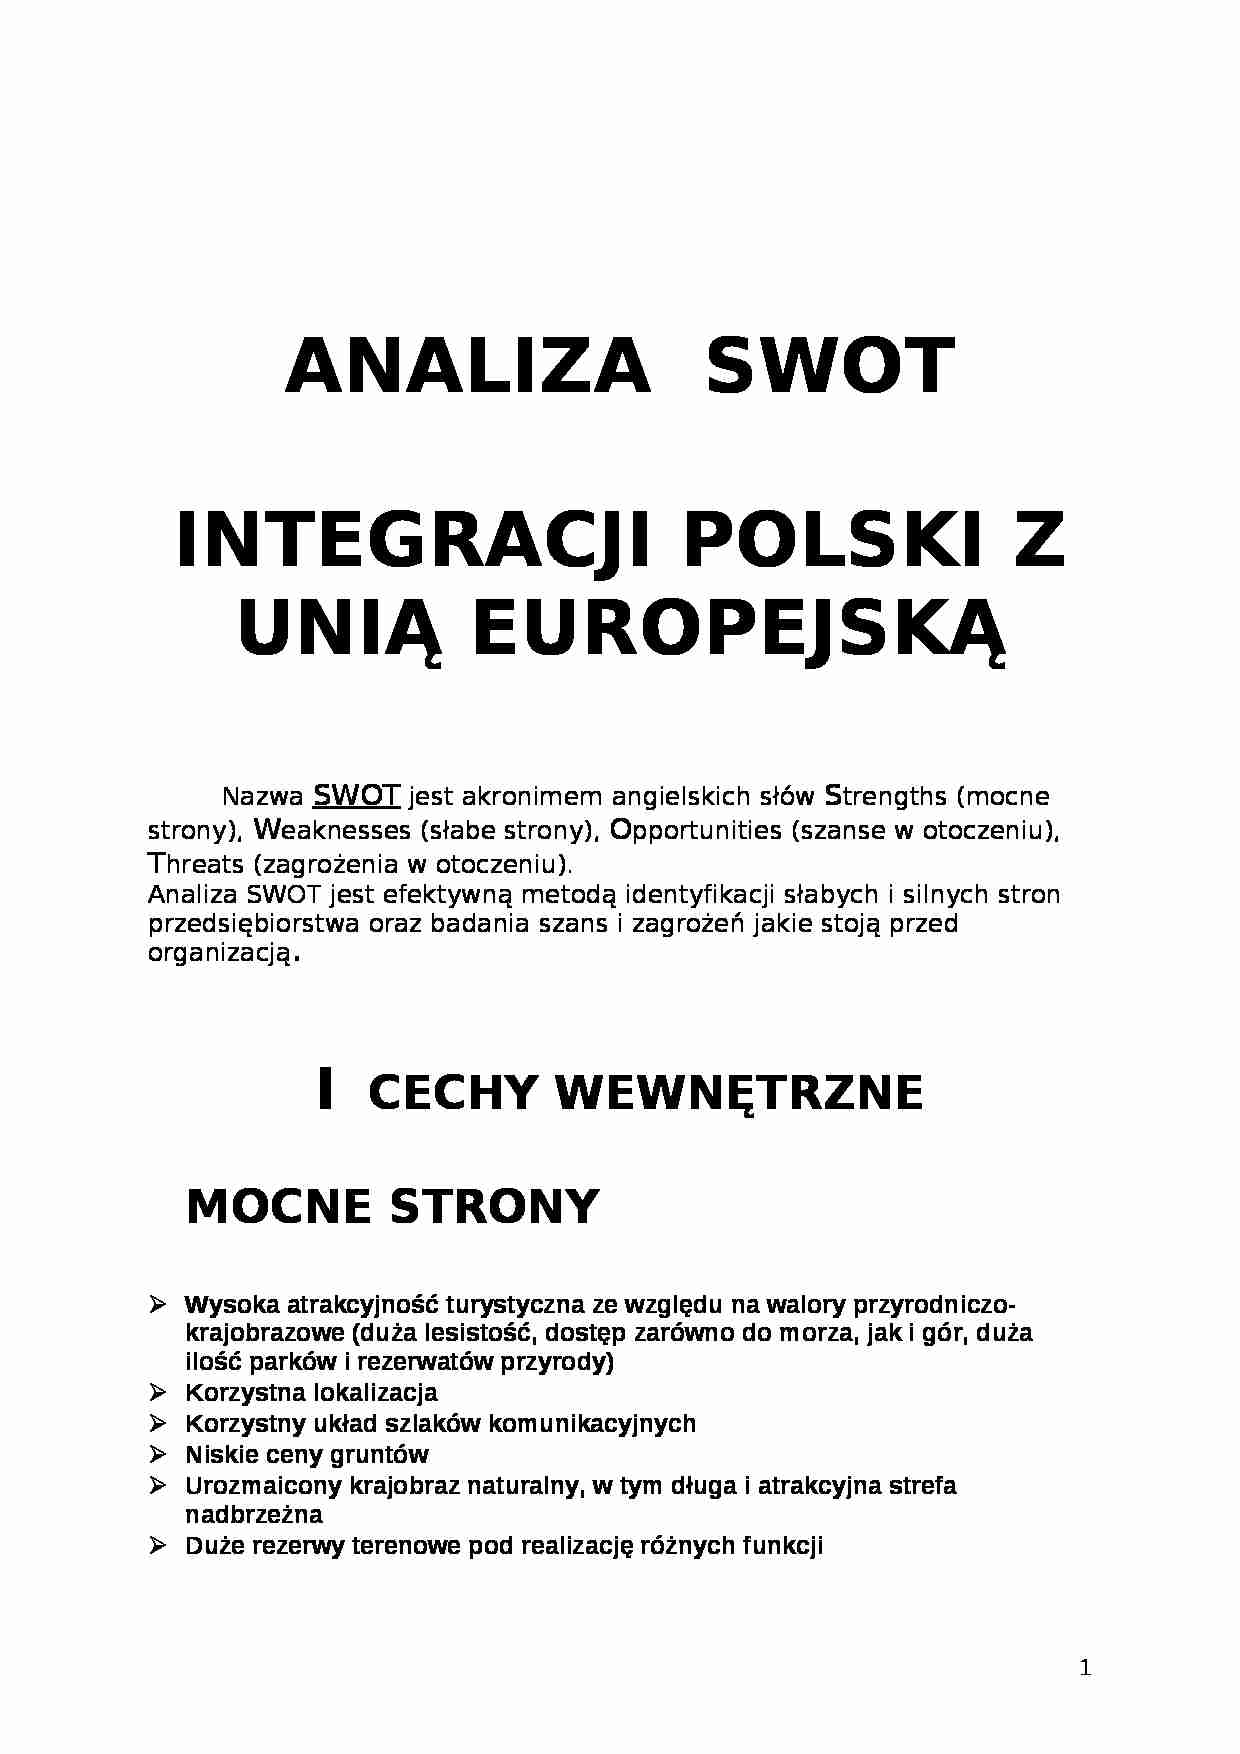 Analiza SWOT integracji Polski z Unią Europejską - strona 1